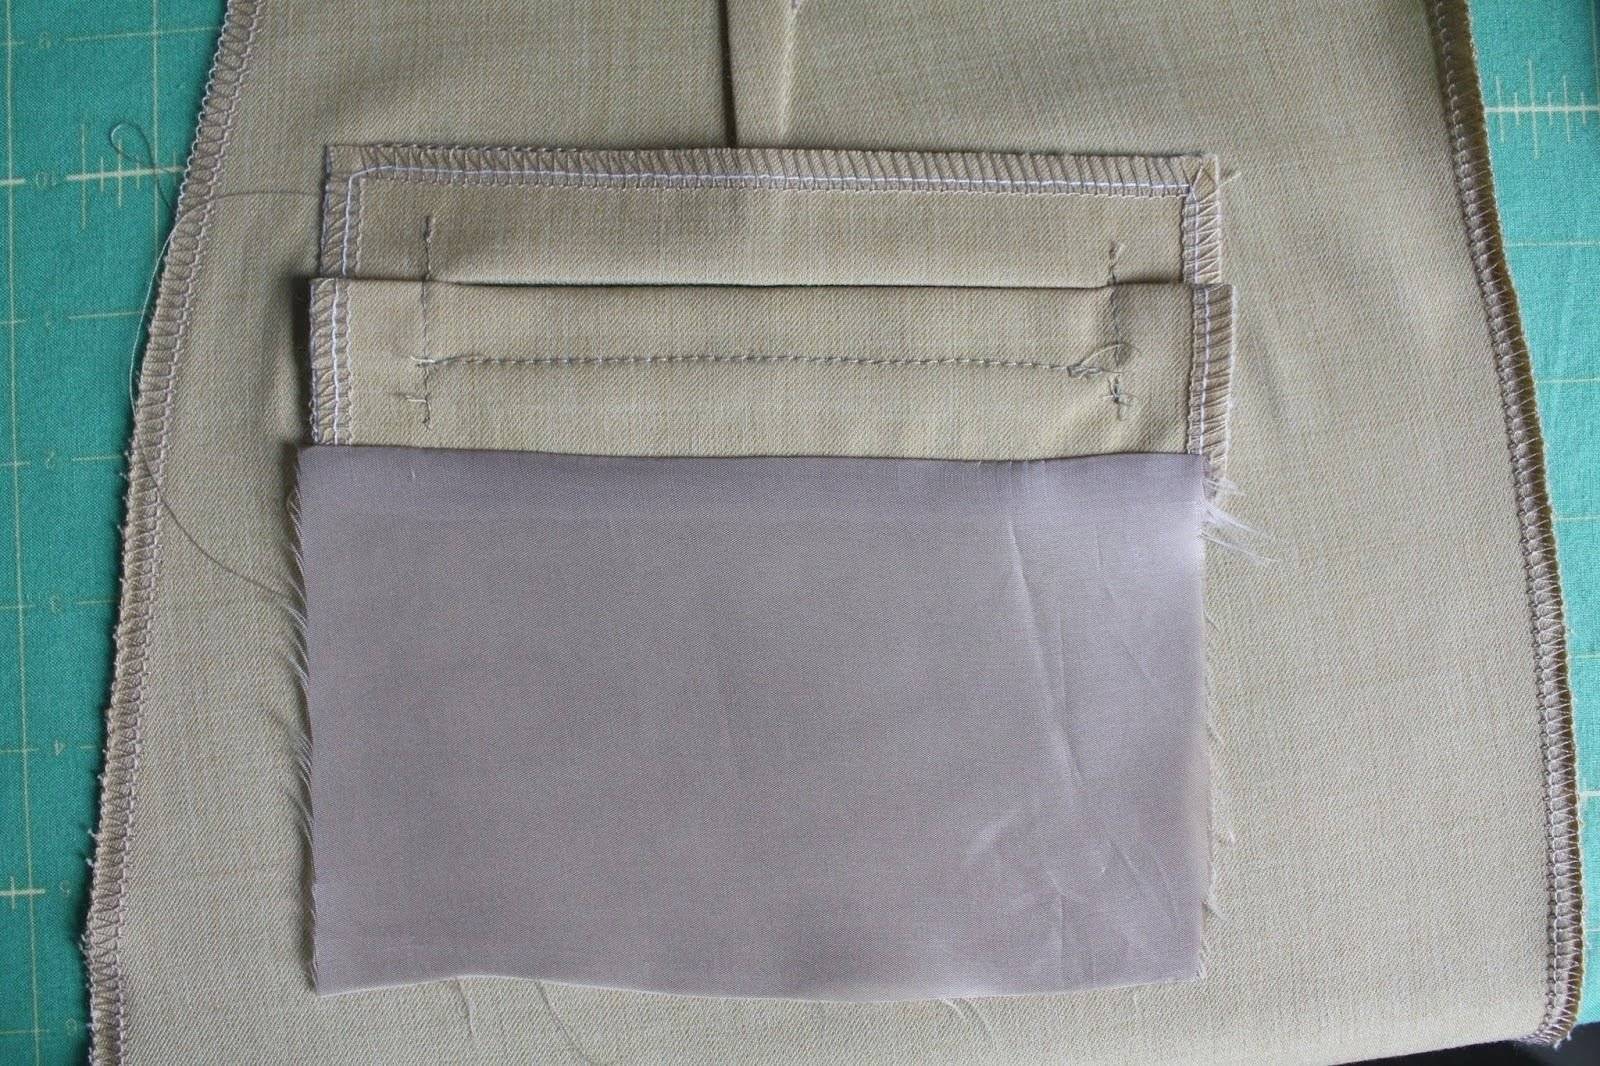 Обработка накладного кармана: изготавливаем карманы с подкладкой, молнией и клапаном